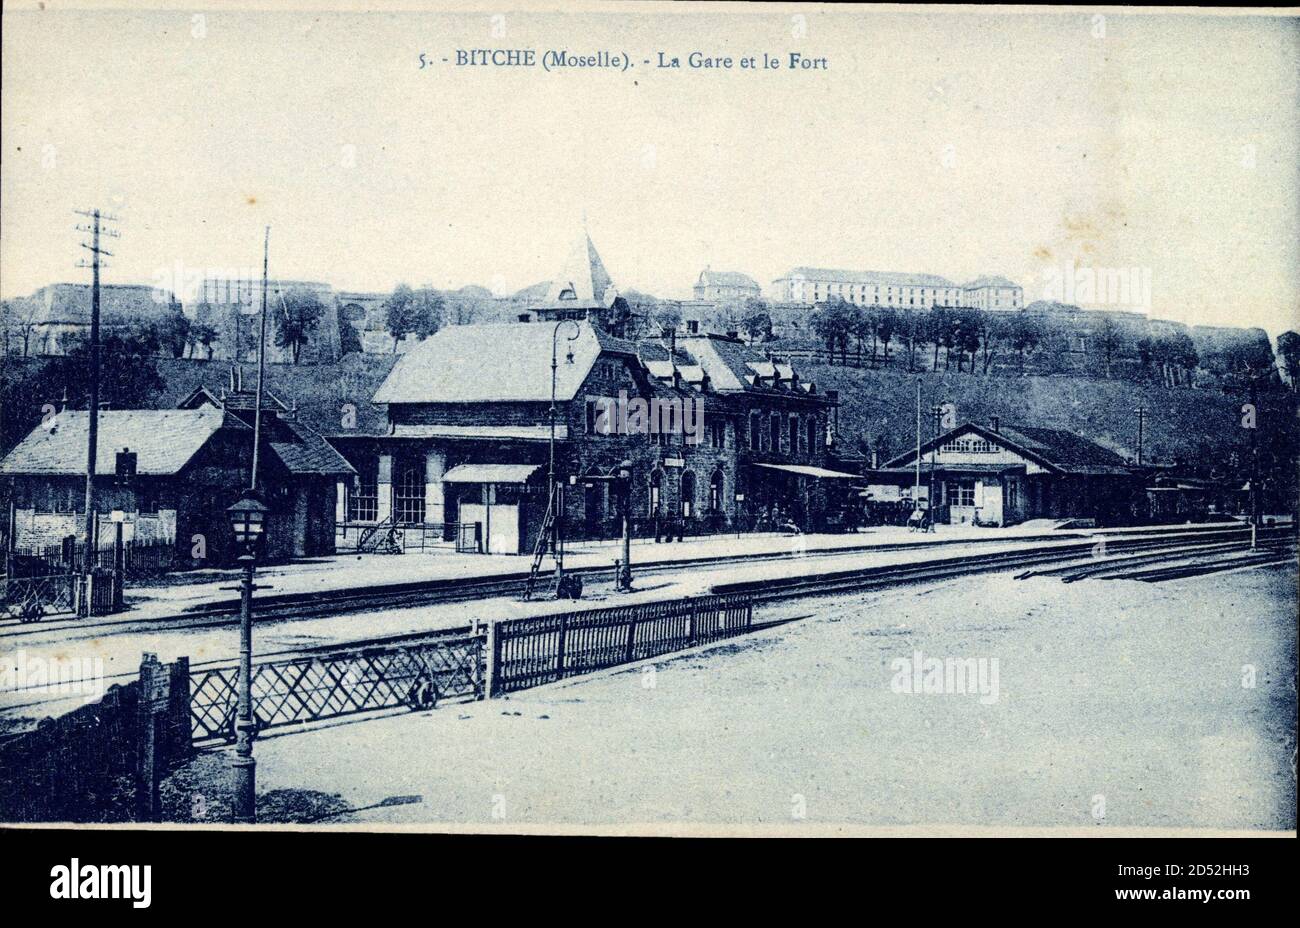 Bitche Moselle, Blick auf den Bahnhof und die Festung, la Gare et le Fort | utilizzo in tutto il mondo Foto Stock